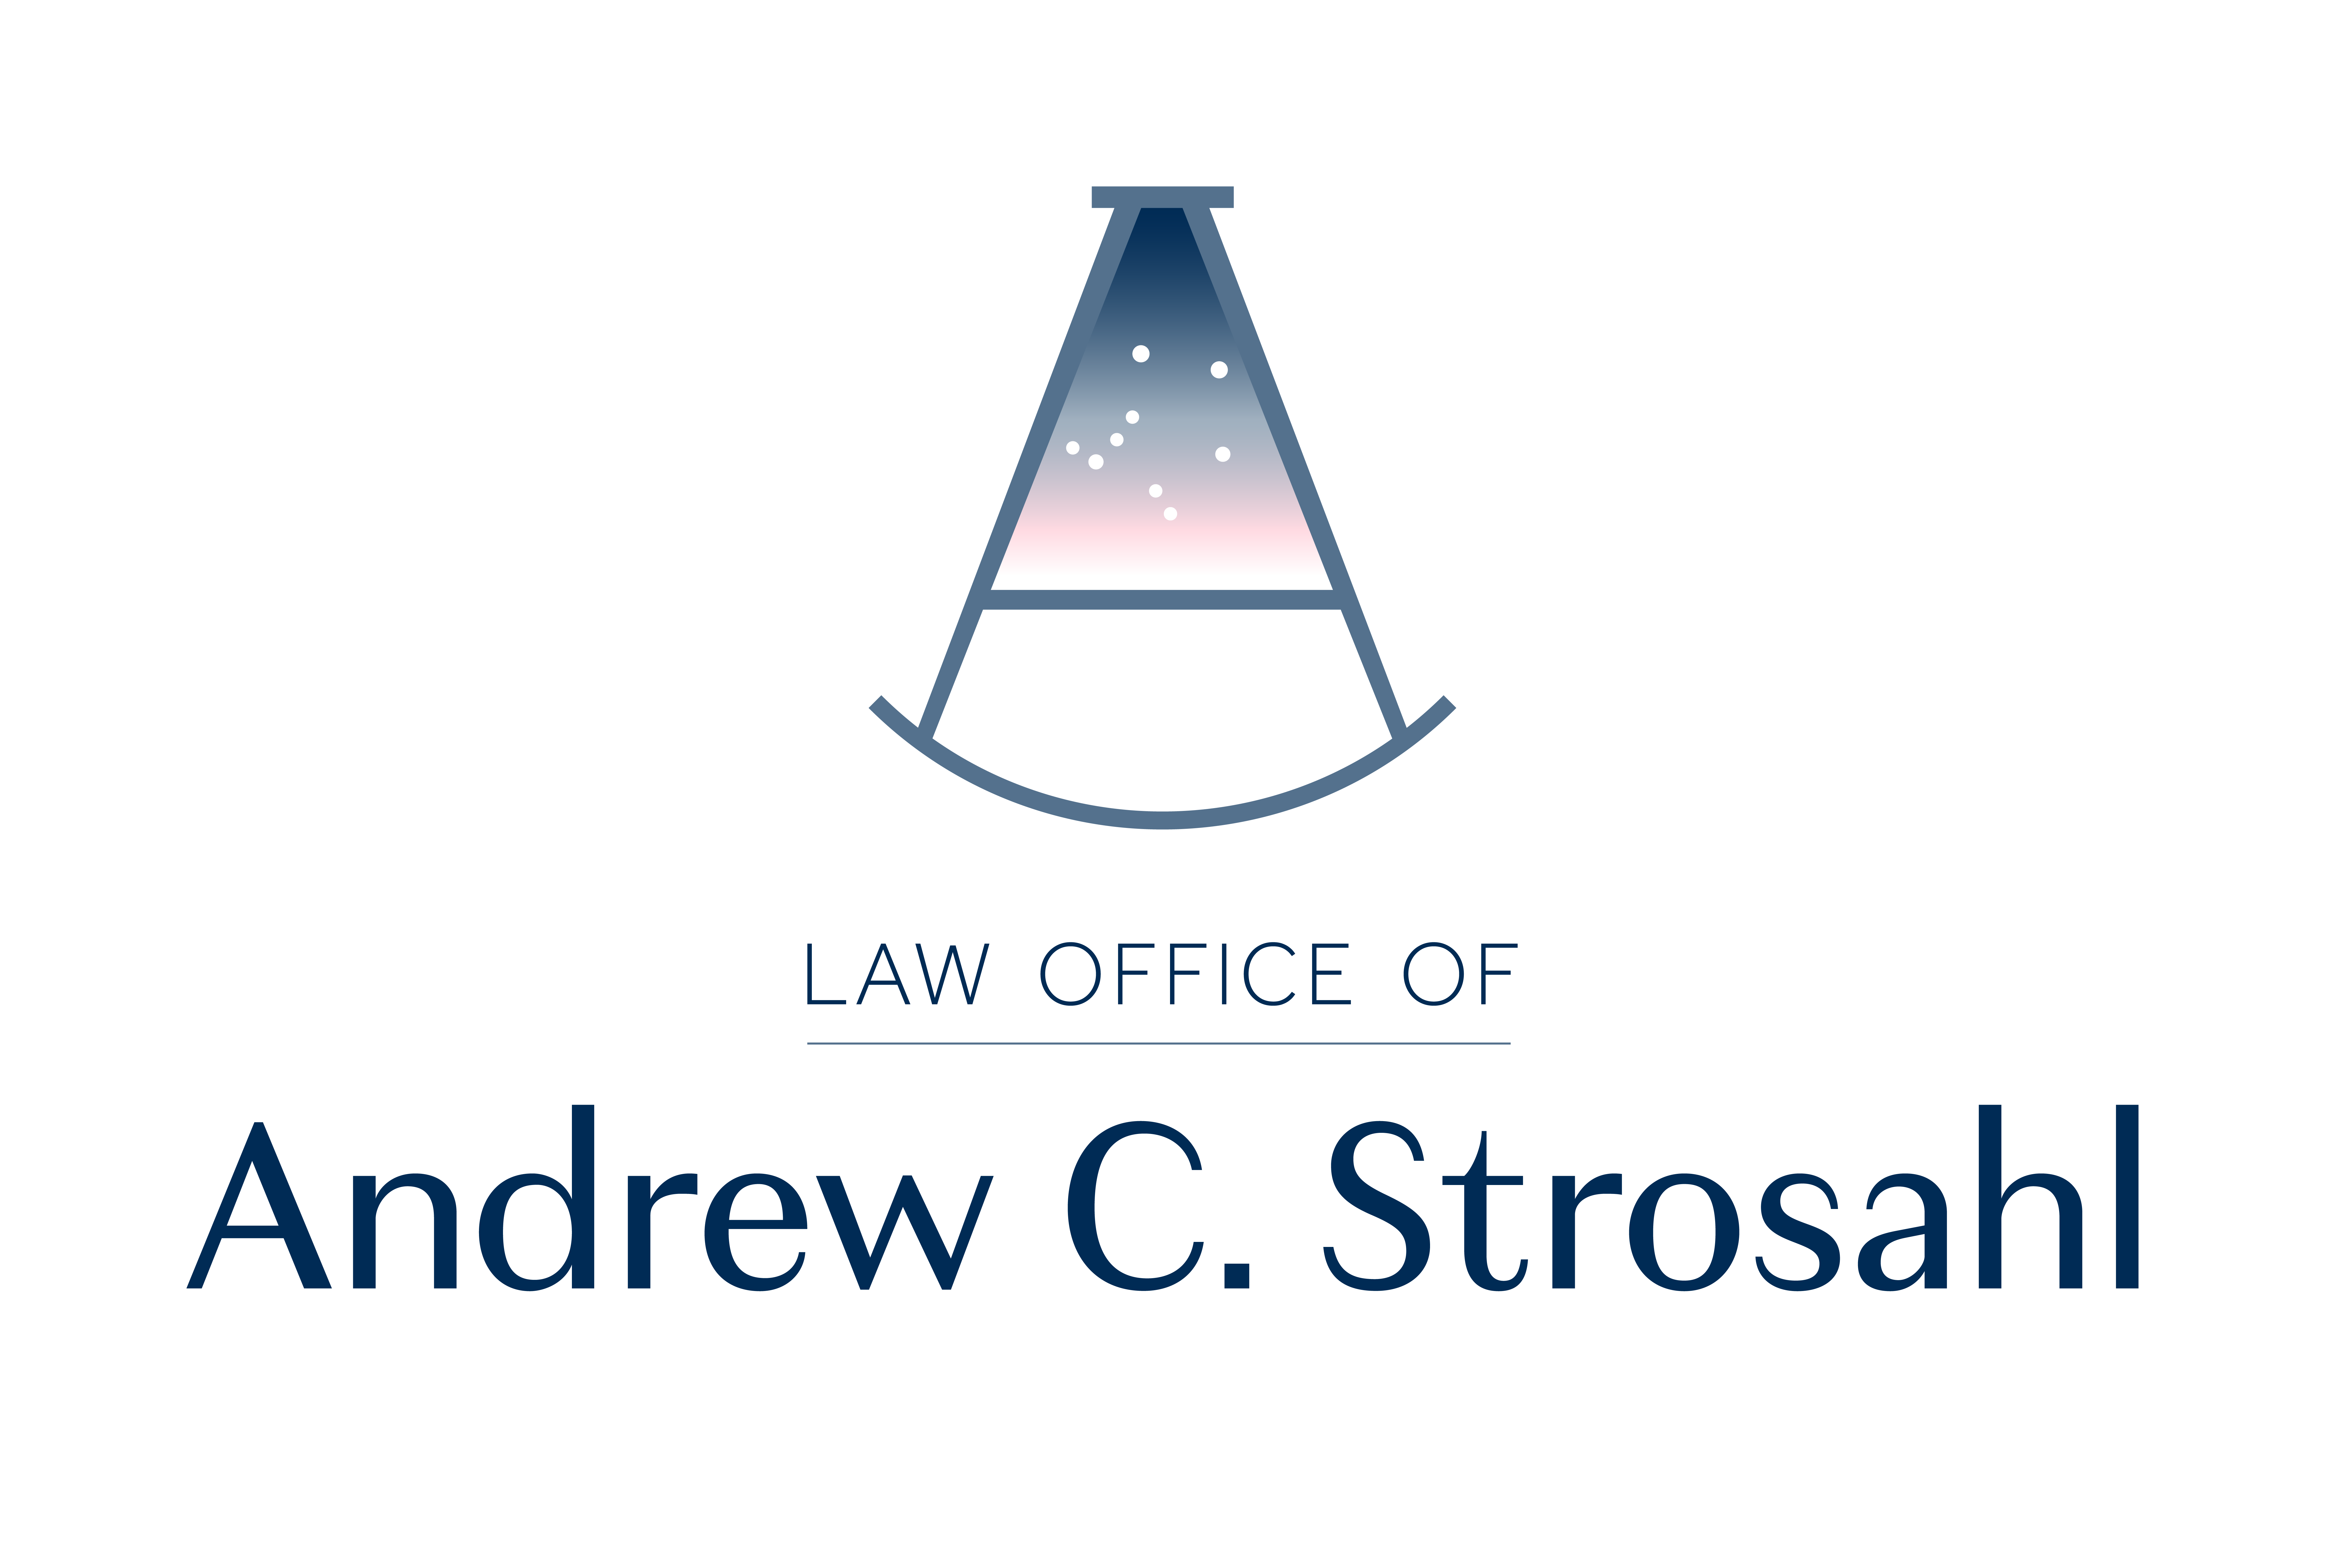 Law Office of Andrew C. Strosahl logo